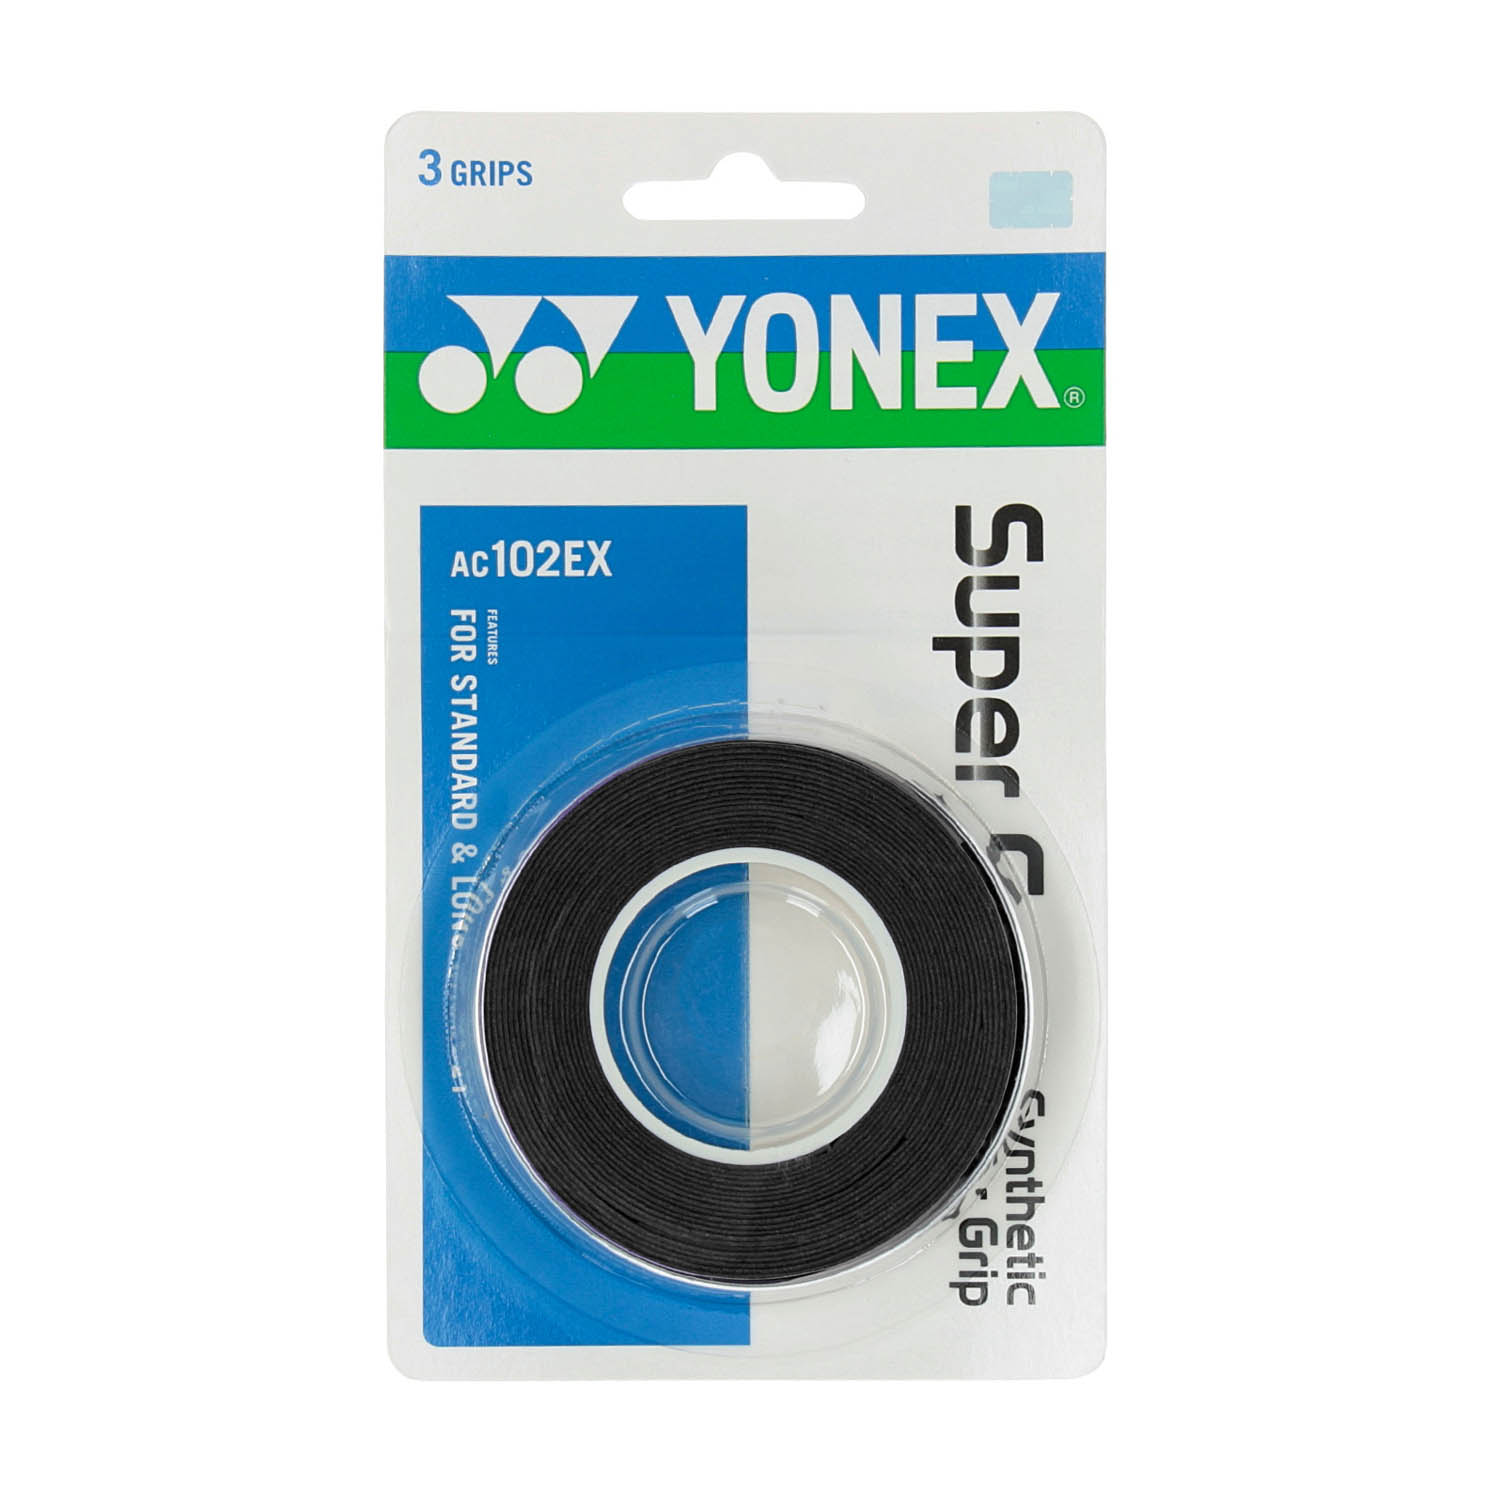 Yonex Super Grap Overgrip x 3 - Black